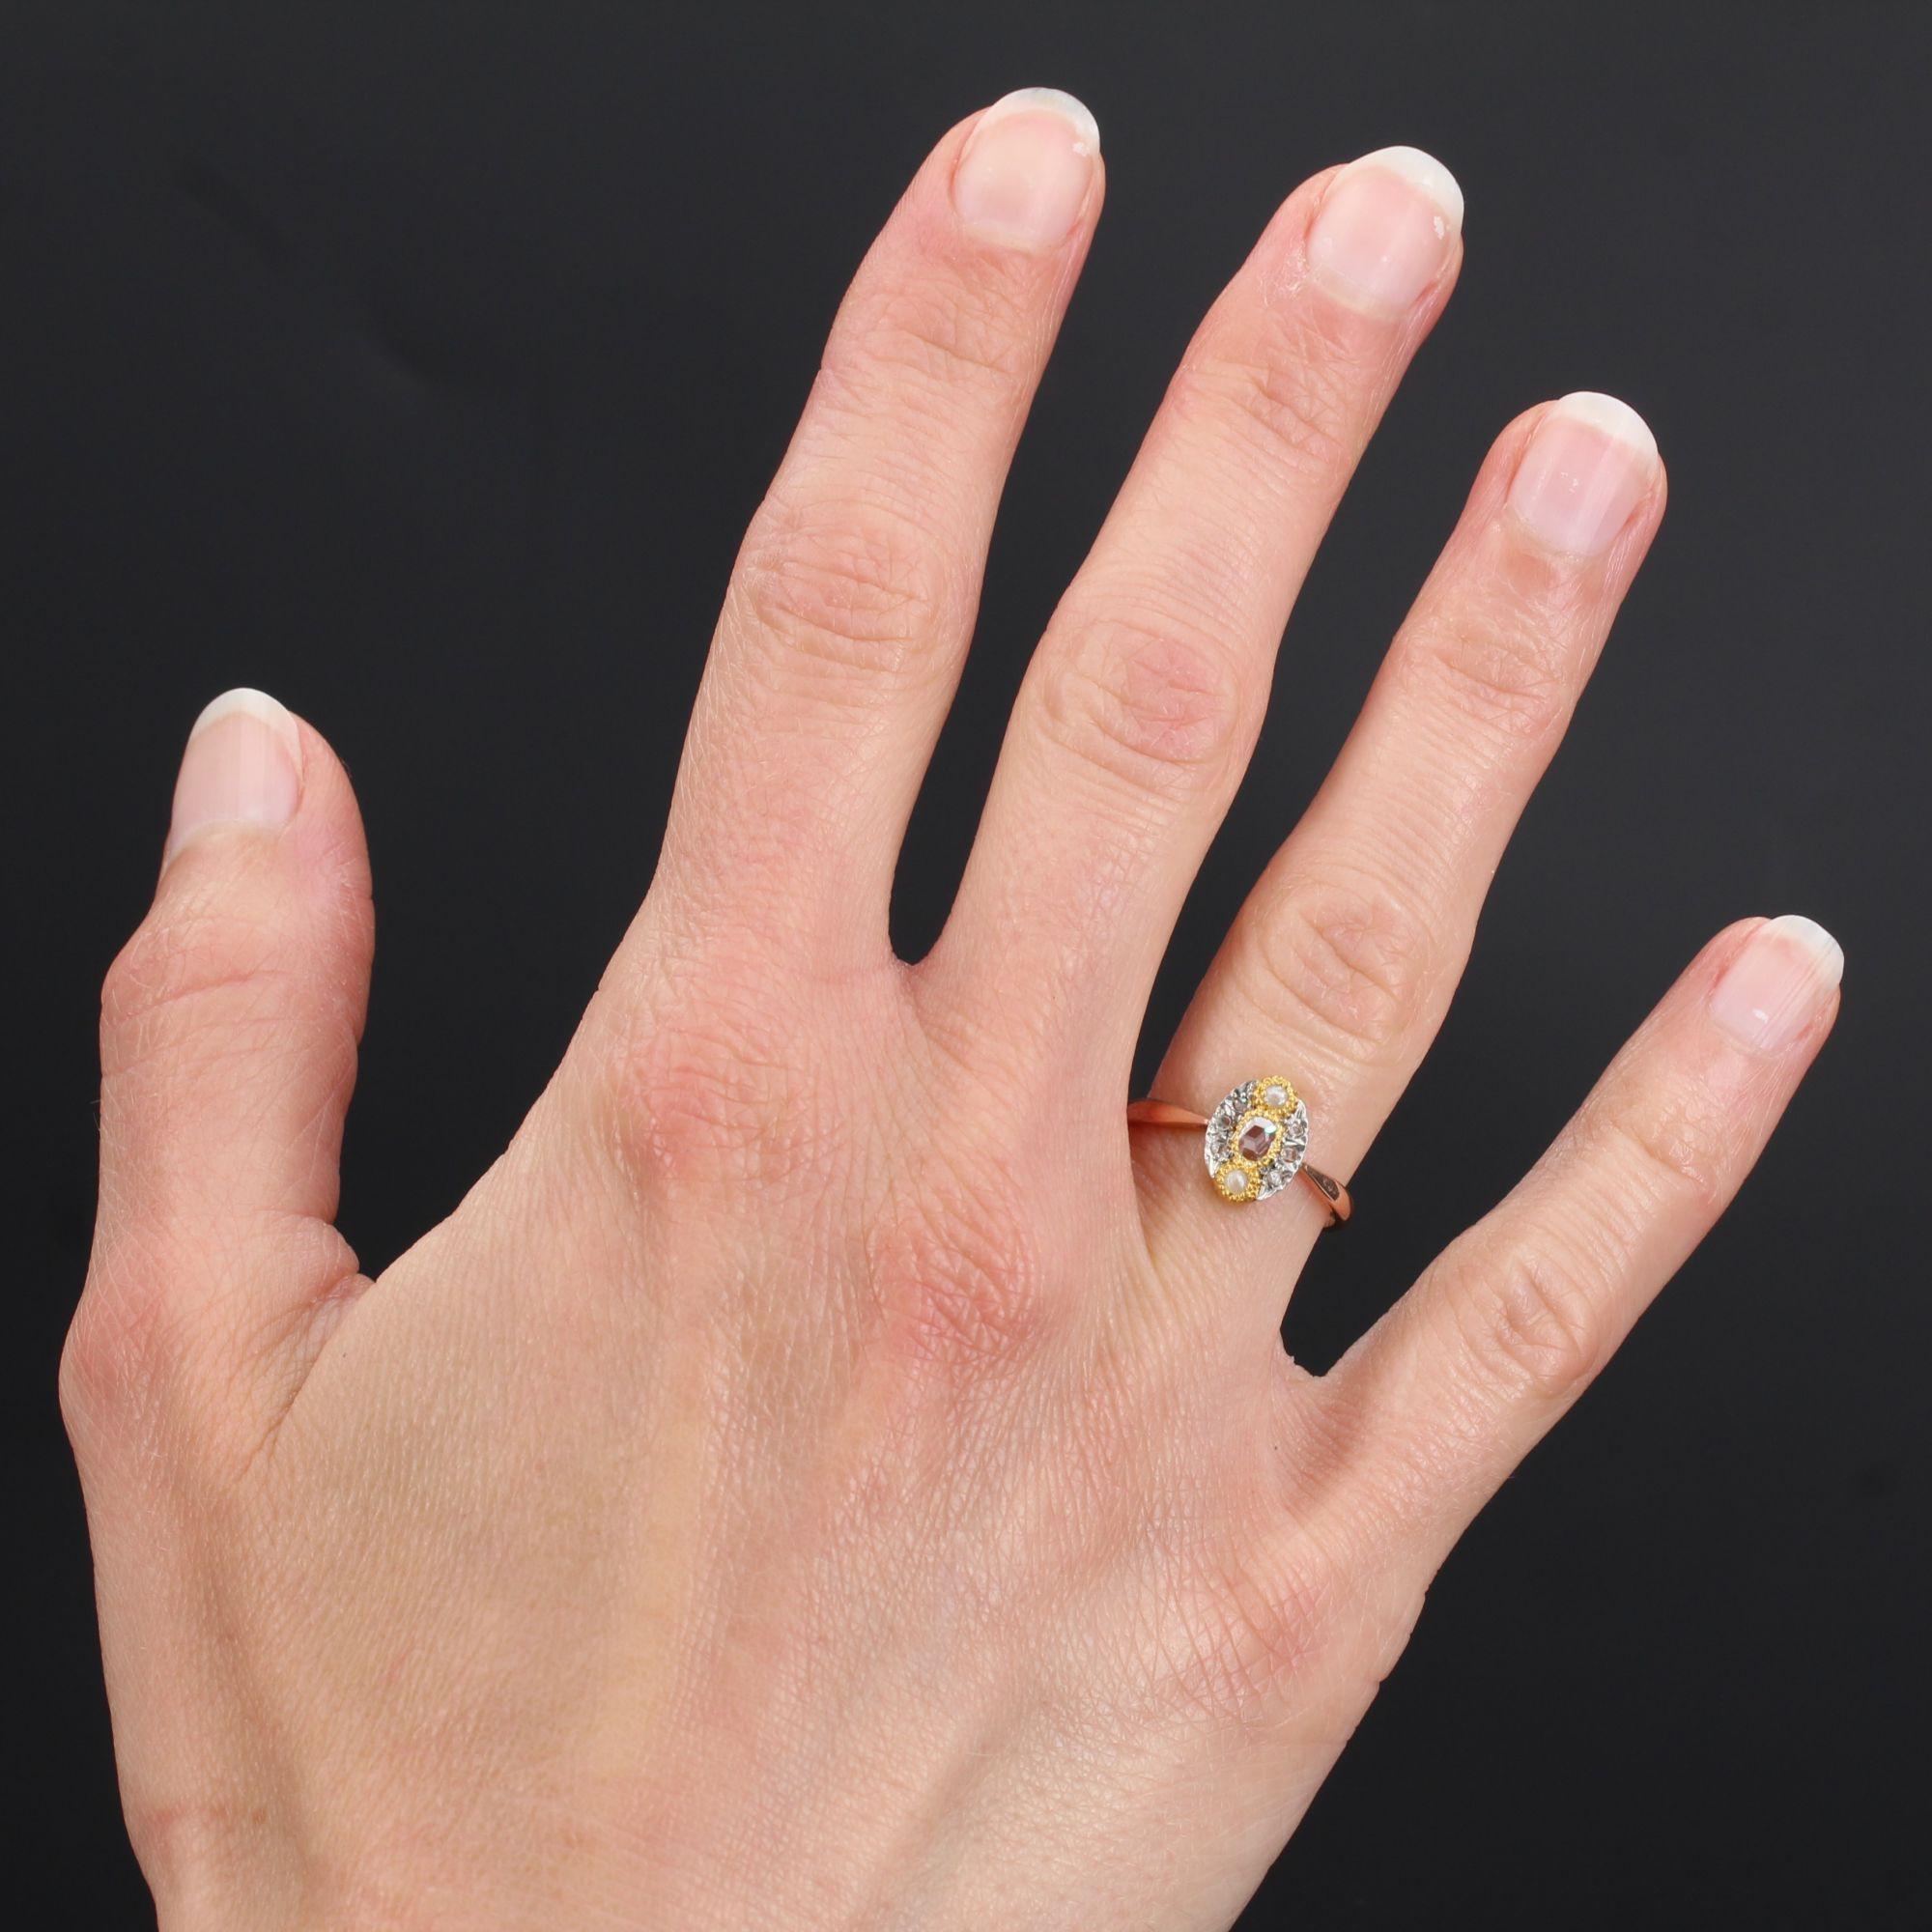 Ring aus 18 Karat Roségold, Eulenpunze und Silber.
Dieser bezaubernde antike Ring in Marquiseform ist mit einem champagnerfarbenen Diamanten im Rosenschliff verziert, der von einer halben Naturperle überragt wird, das Ganze in einer Fassung aus